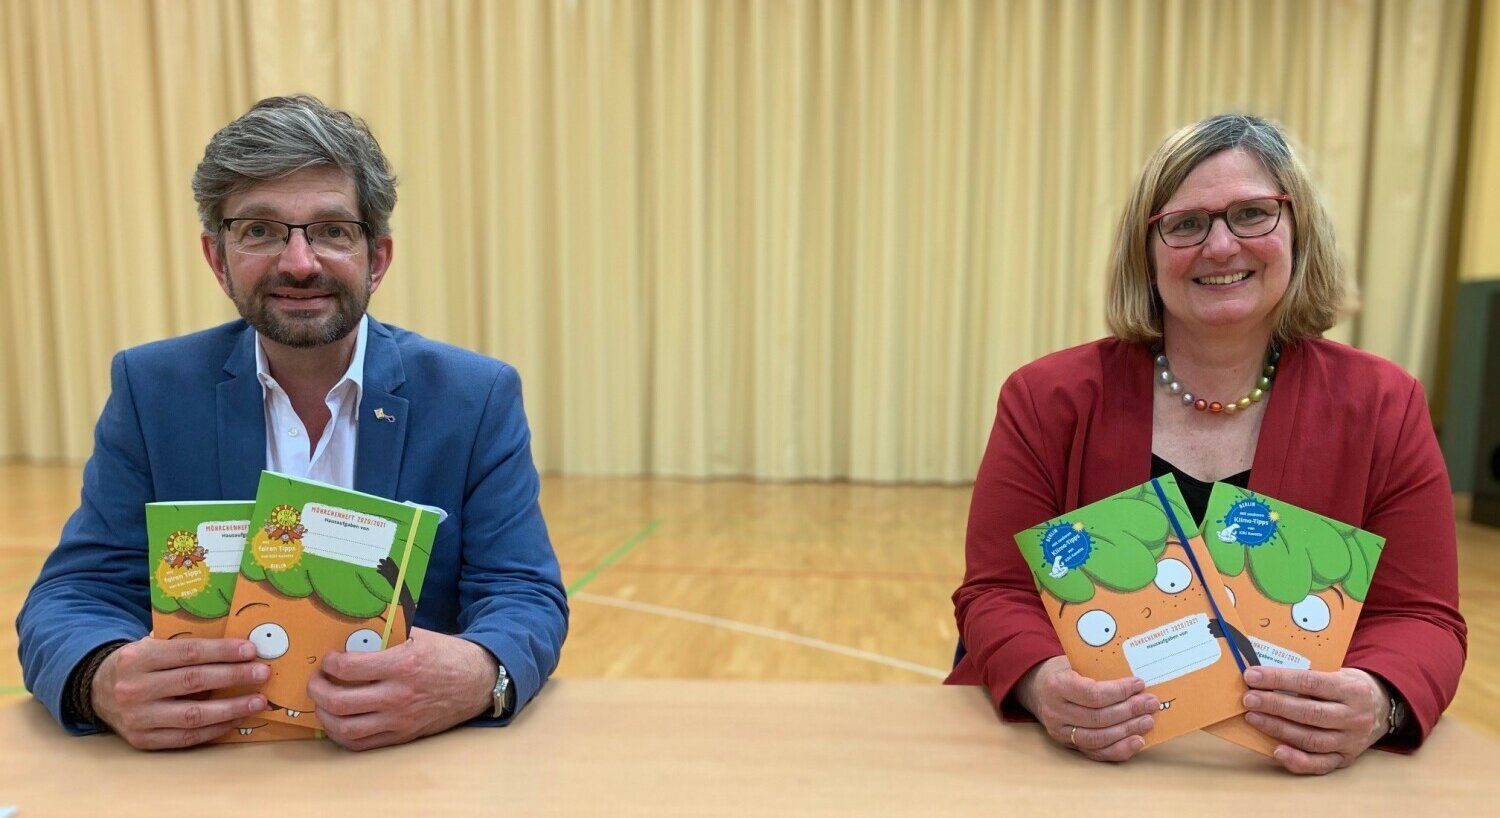 Bezirksbürgermeisterin Angelika Schöttler und Stadtrat Oliver Schworck mit den Möhrchenheften